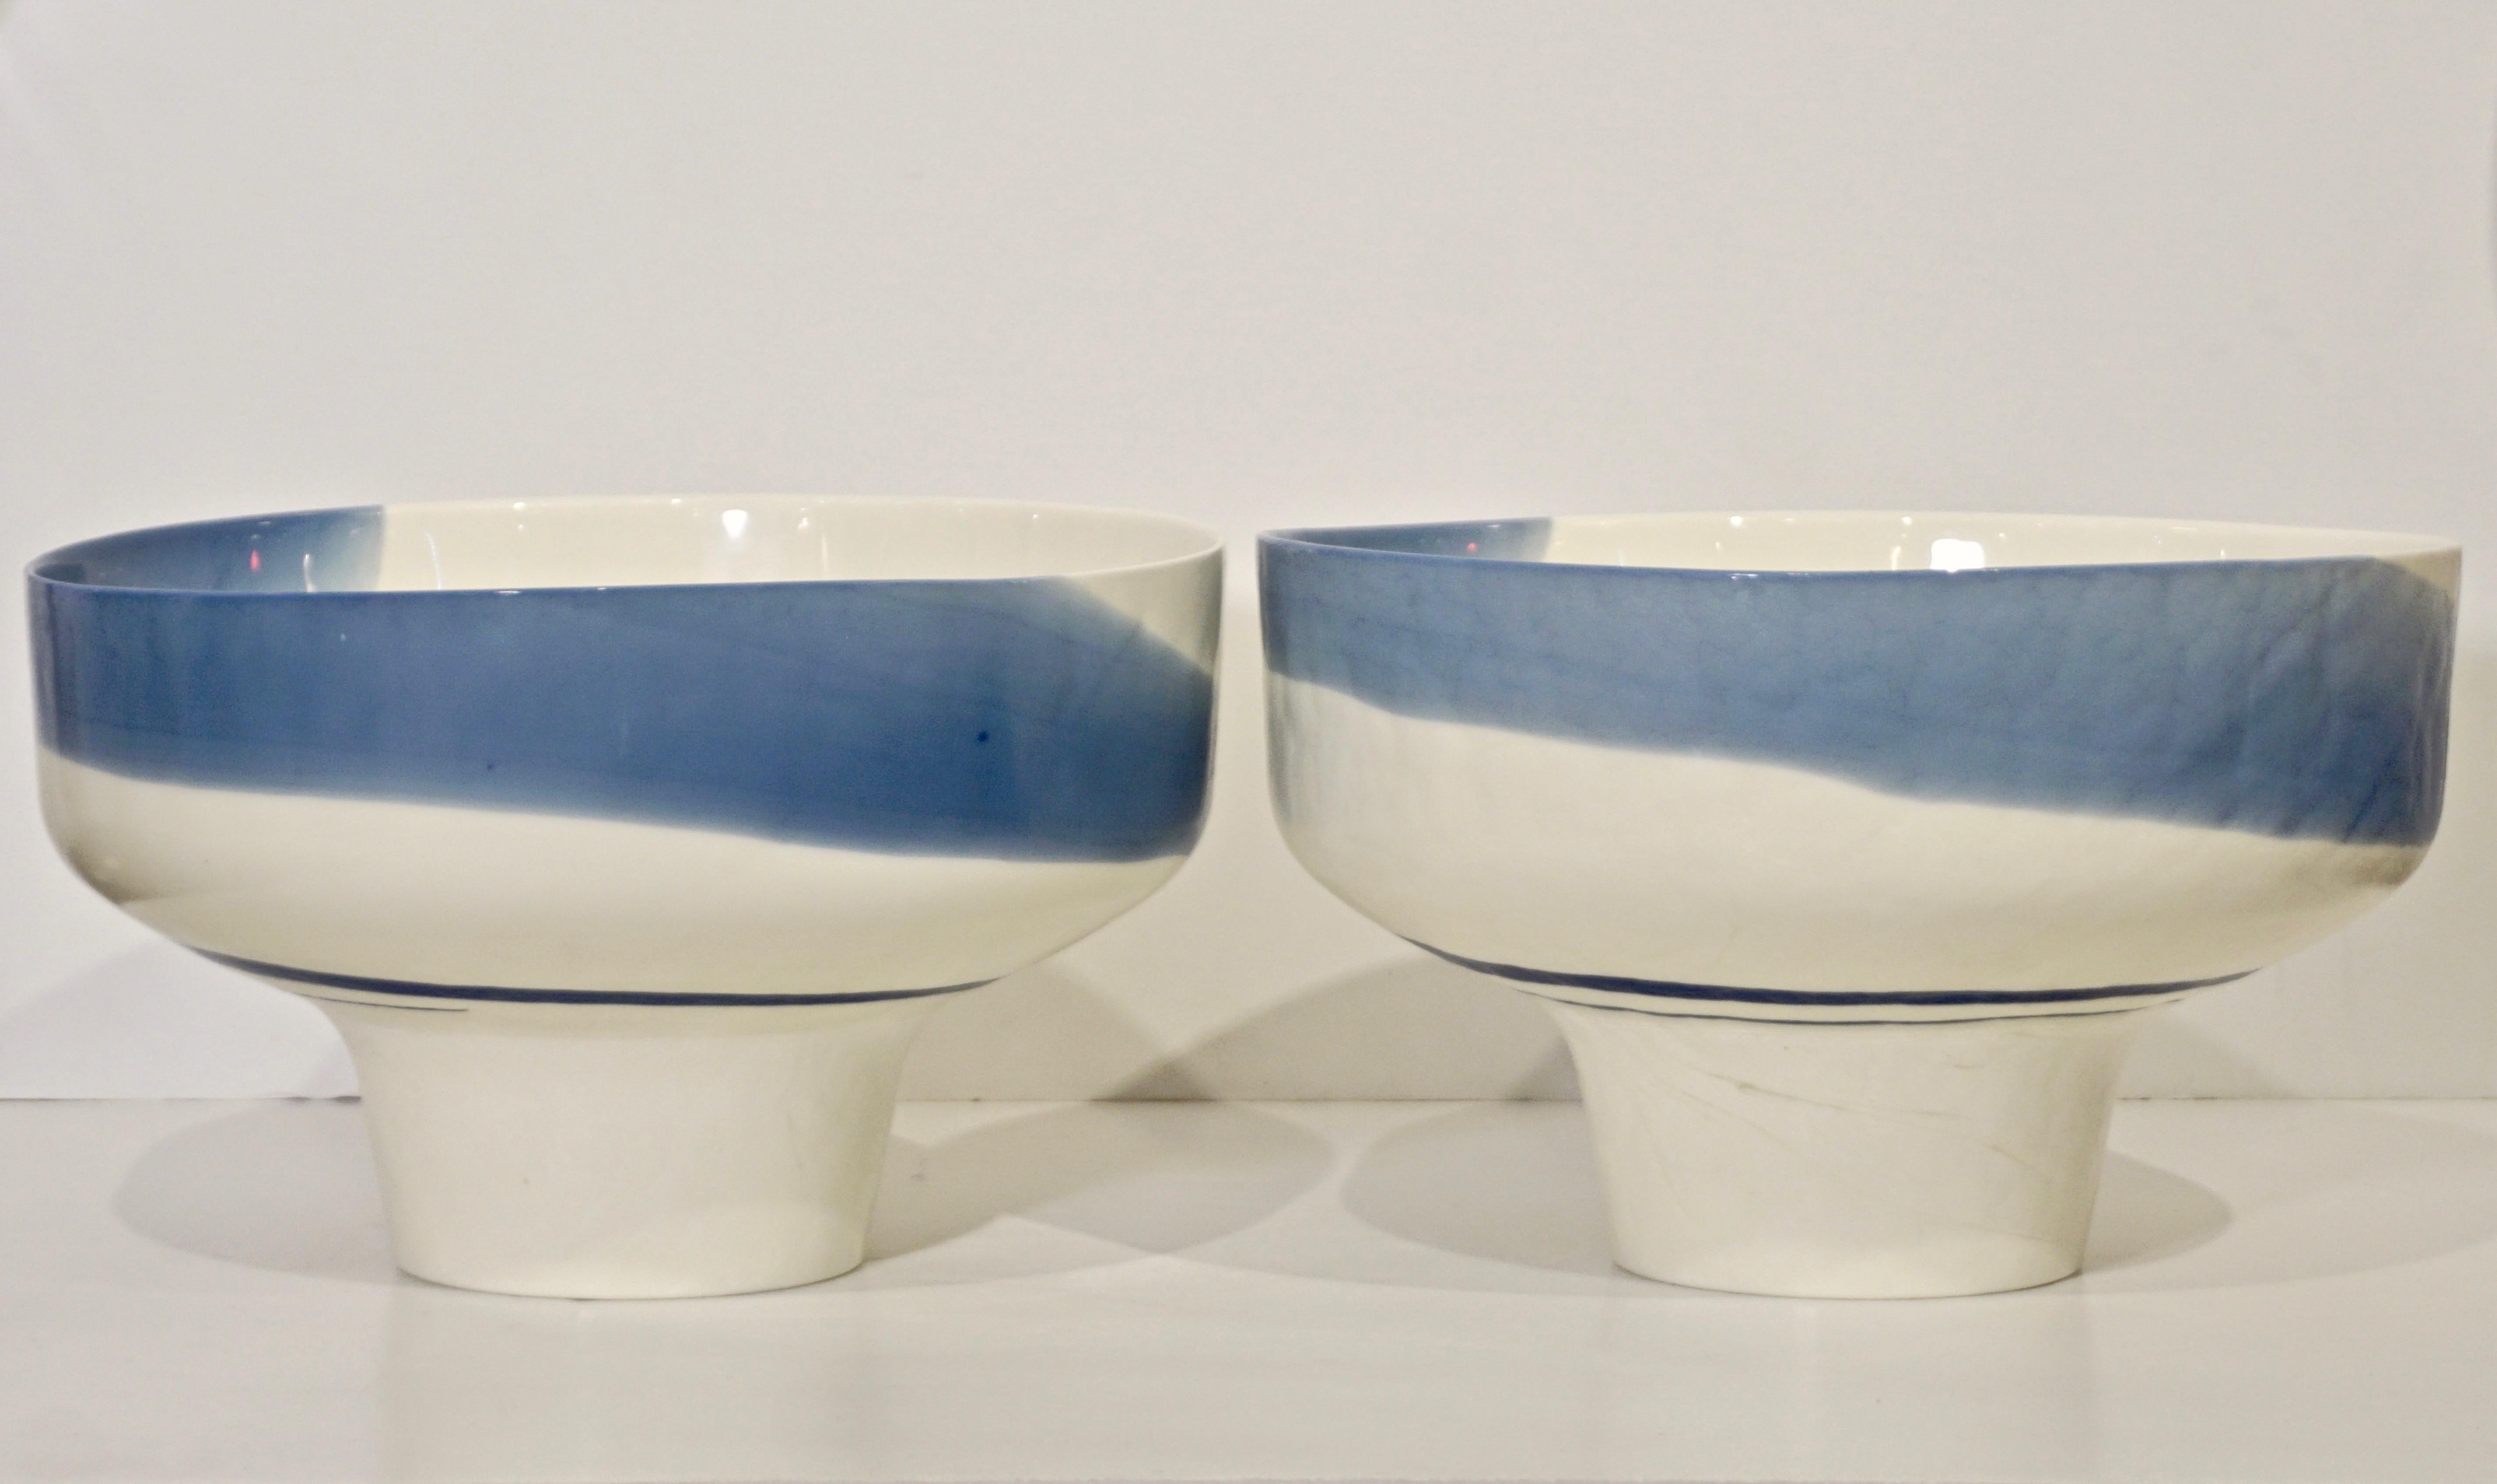 1950s Venini Vintage Italian Blue & Cream White Pate De Verre Murano Glass Bowl For Sale 10